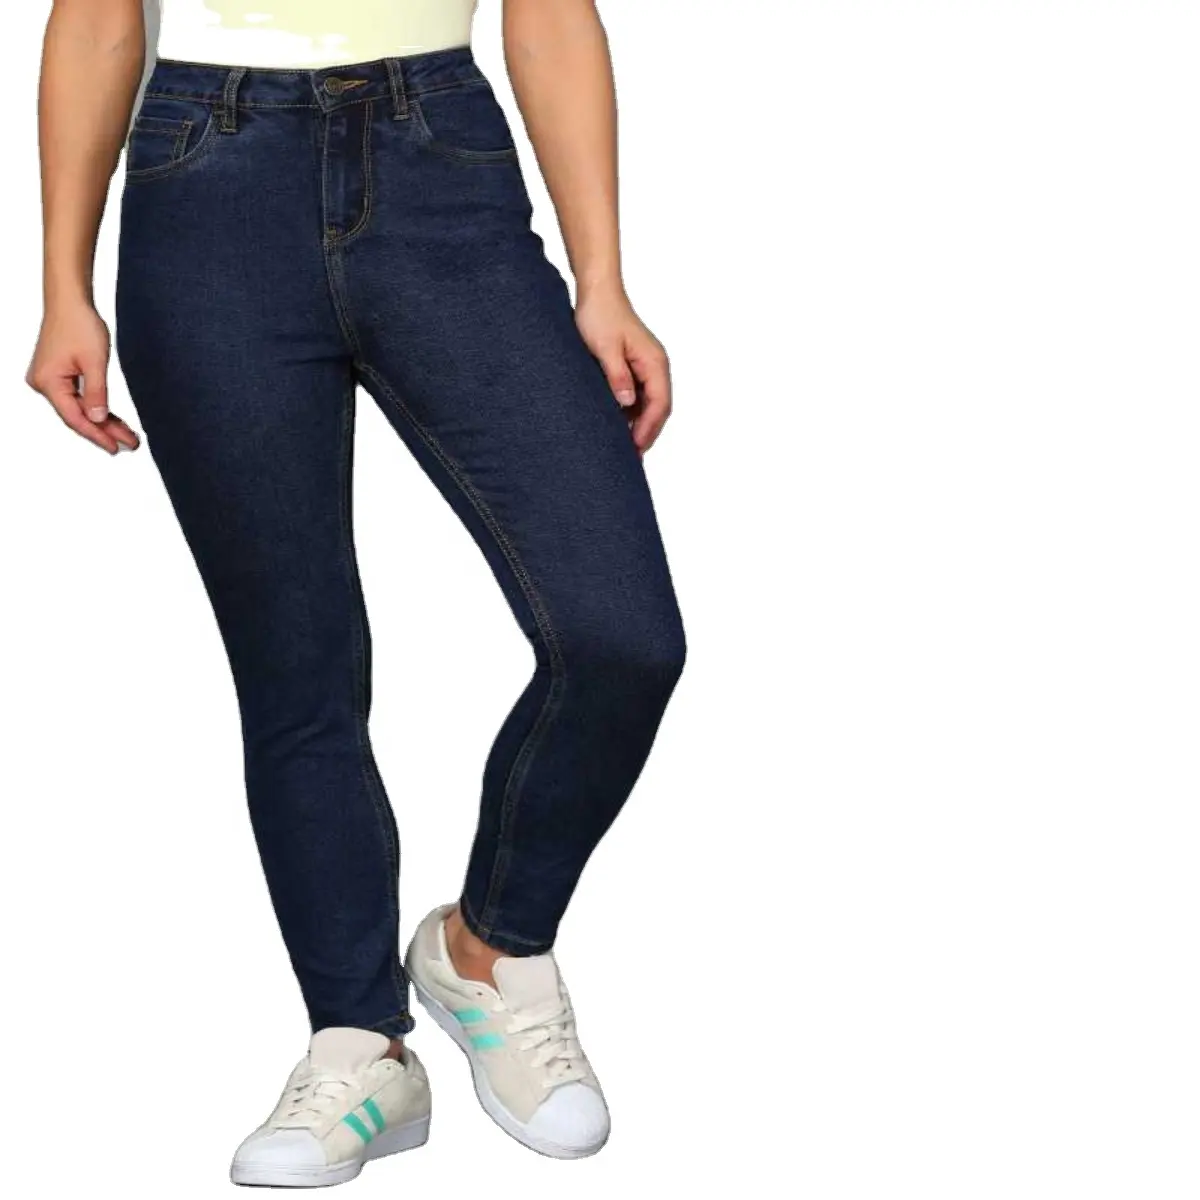 Calça jeans apertada feminina, brim 249 crumple up, cintura alta, meninas, jovens, calças casuais, inverno, primavera, spandex, sonho